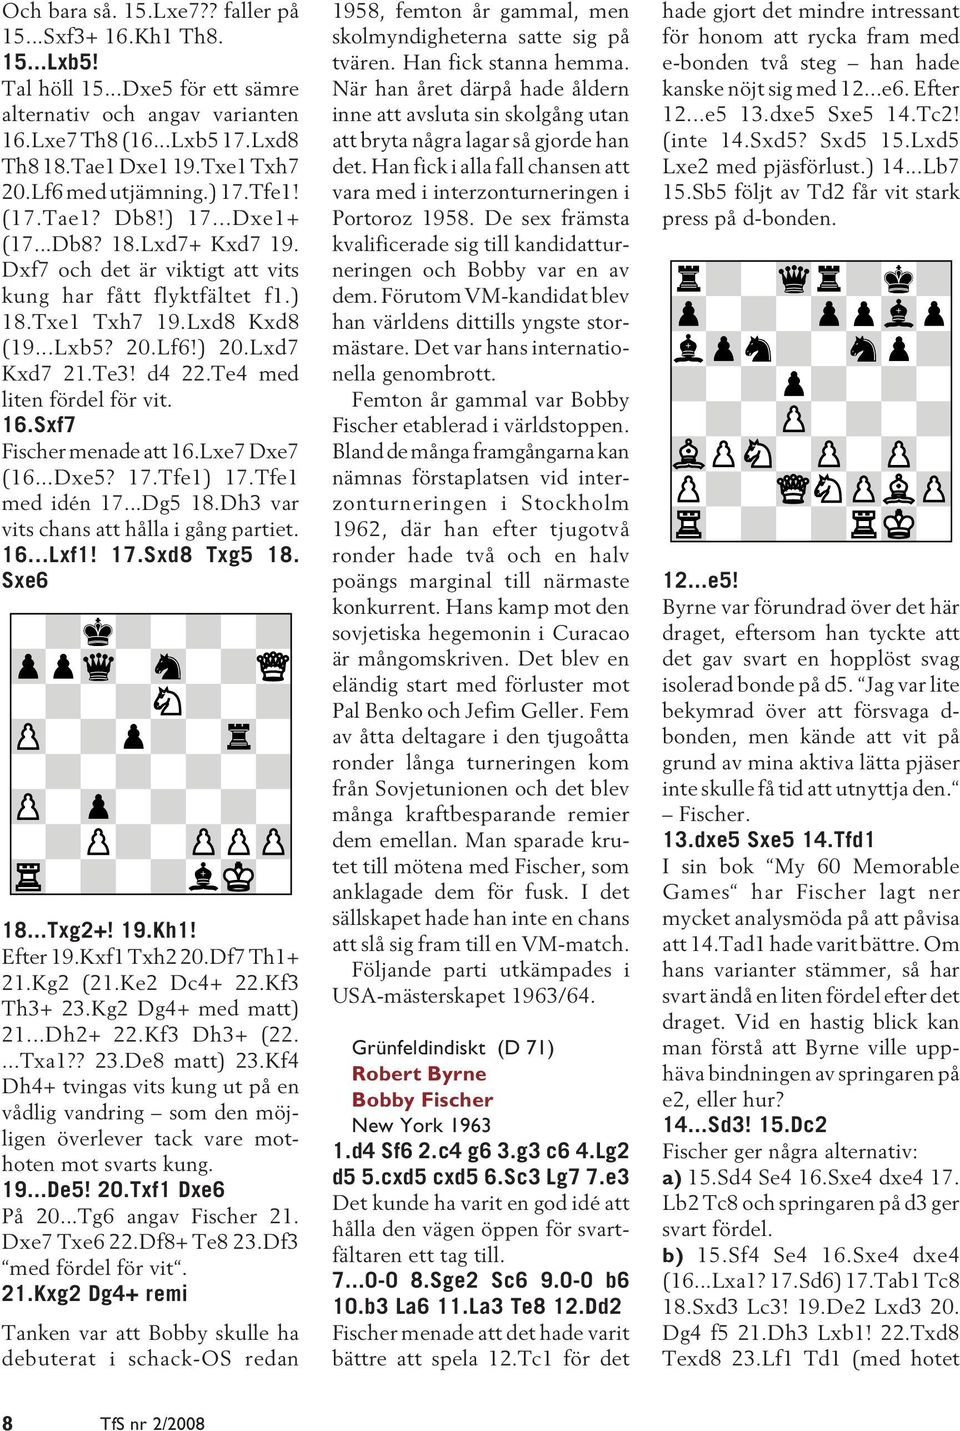 Lxd7 Kxd7 21.Te3! d4 22.Te4 med liten fördel för vit. 16.Sxf7 Fischer menade att 16.Lxe7 Dxe7 (16...Dxe5? 17.Tfe1) 17.Tfe1 med idén 17...Dg5 18.Dh3 var vits chans att hålla i gång partiet. 16...Lxf1!